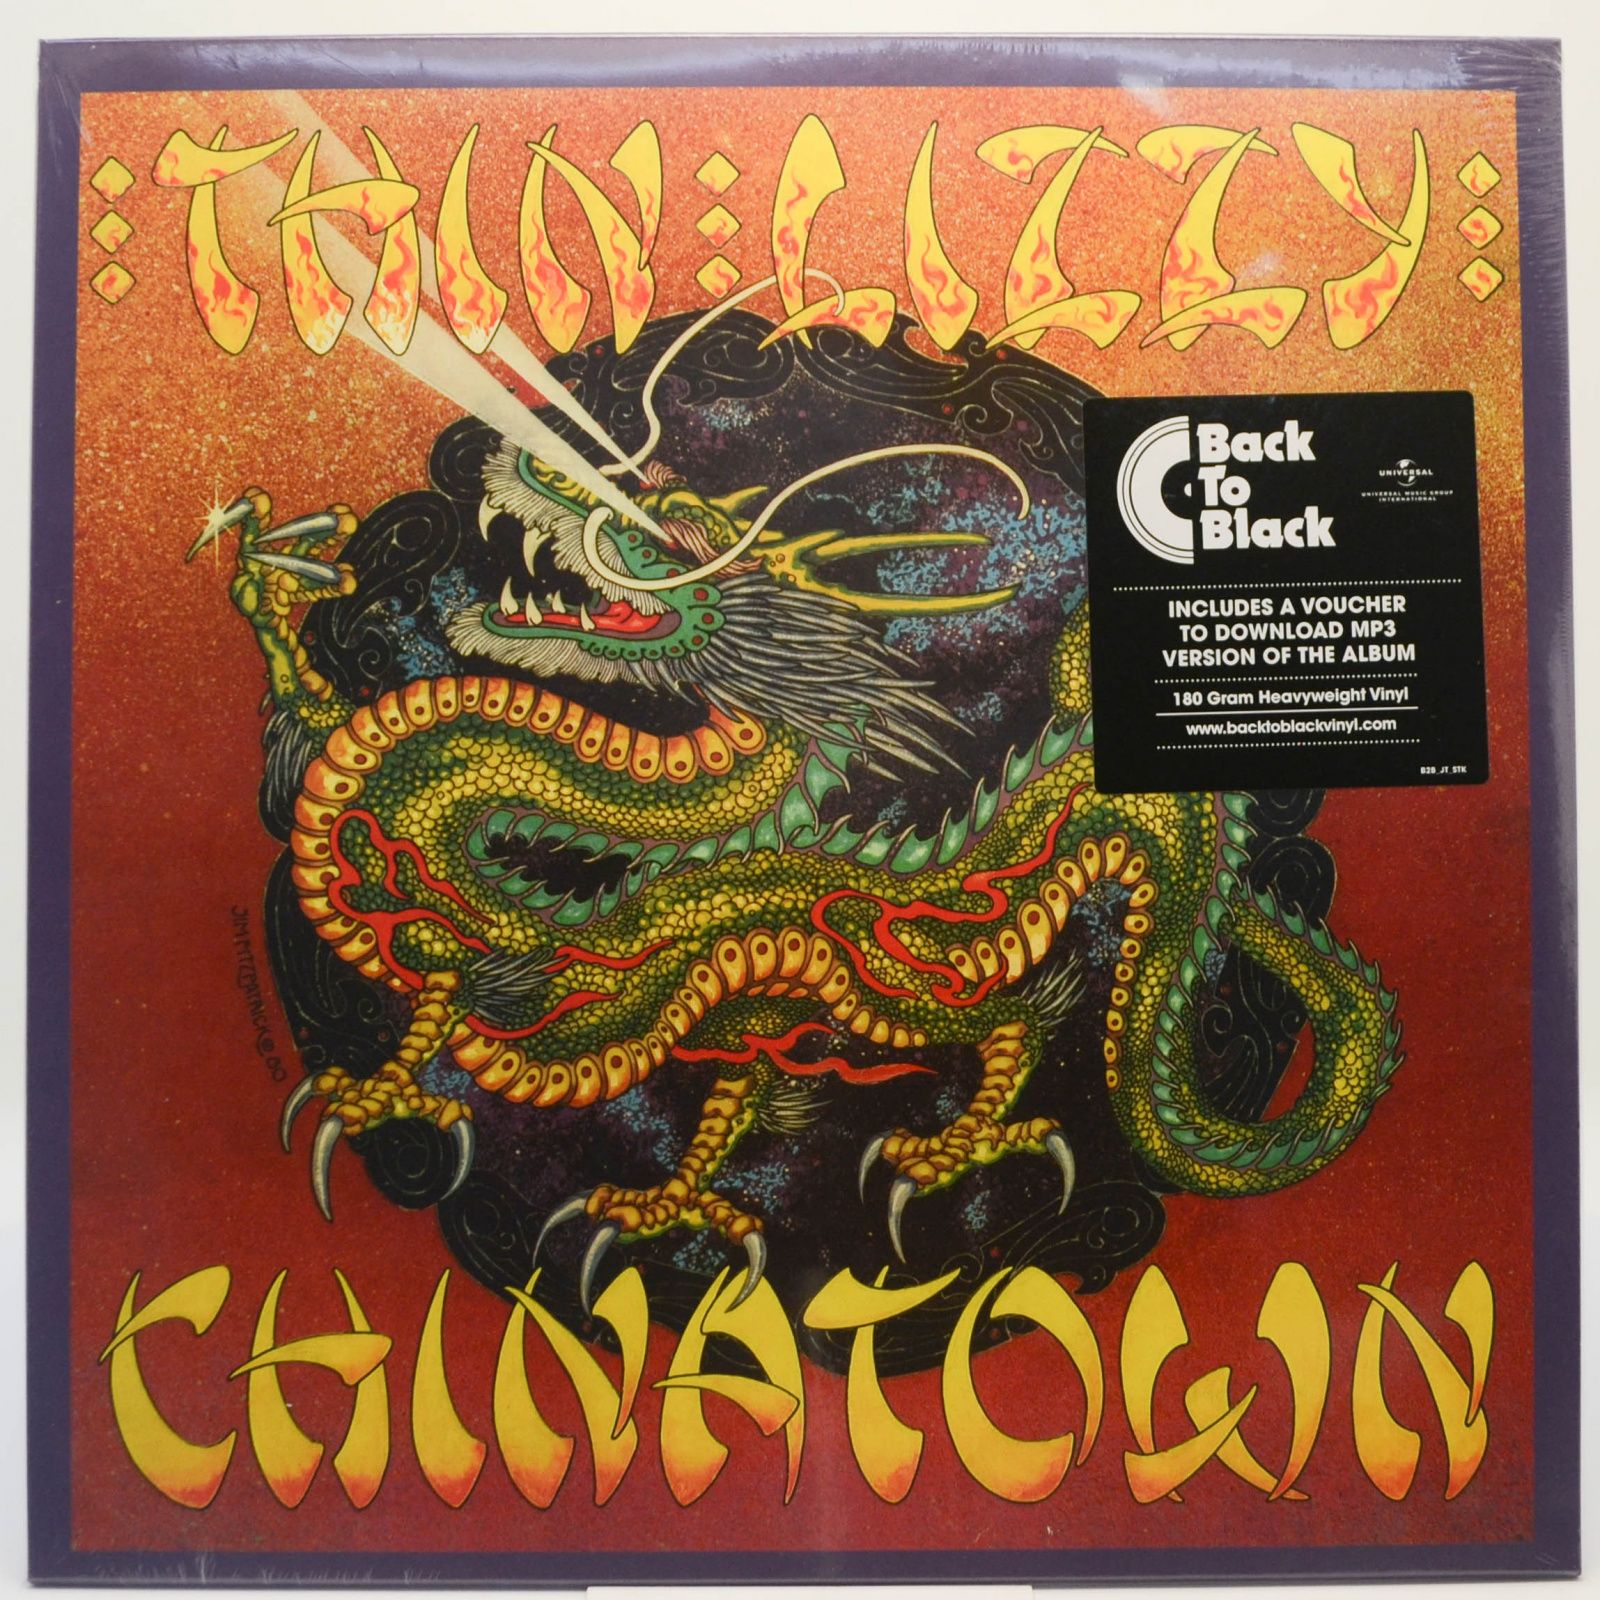 Thin Lizzy — Chinatown, 1980